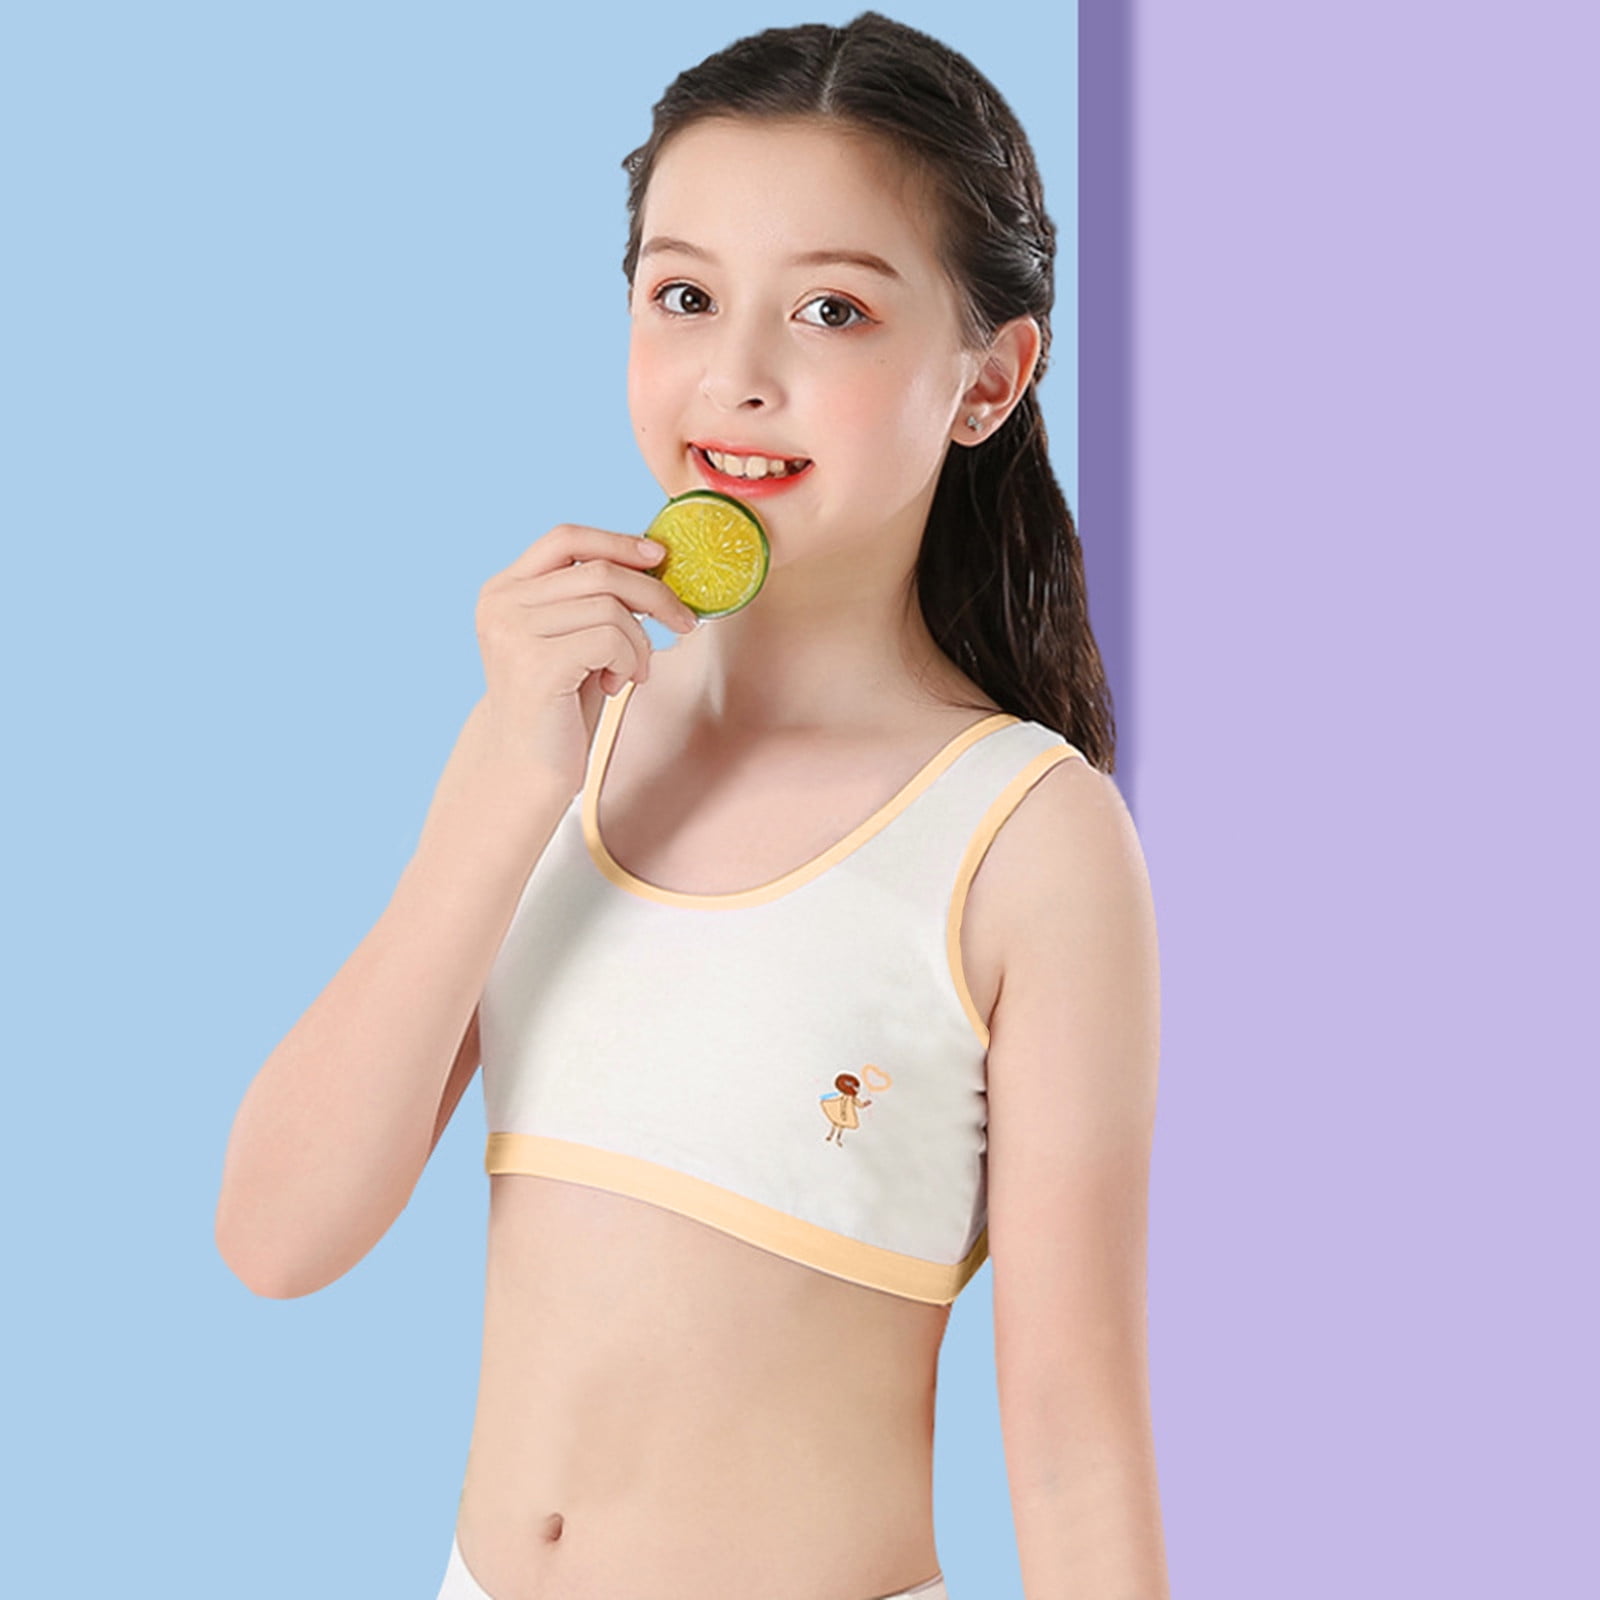 Kids Girls Underwear Bra Vest Children Underclothes Undies Clothes Sports Vest